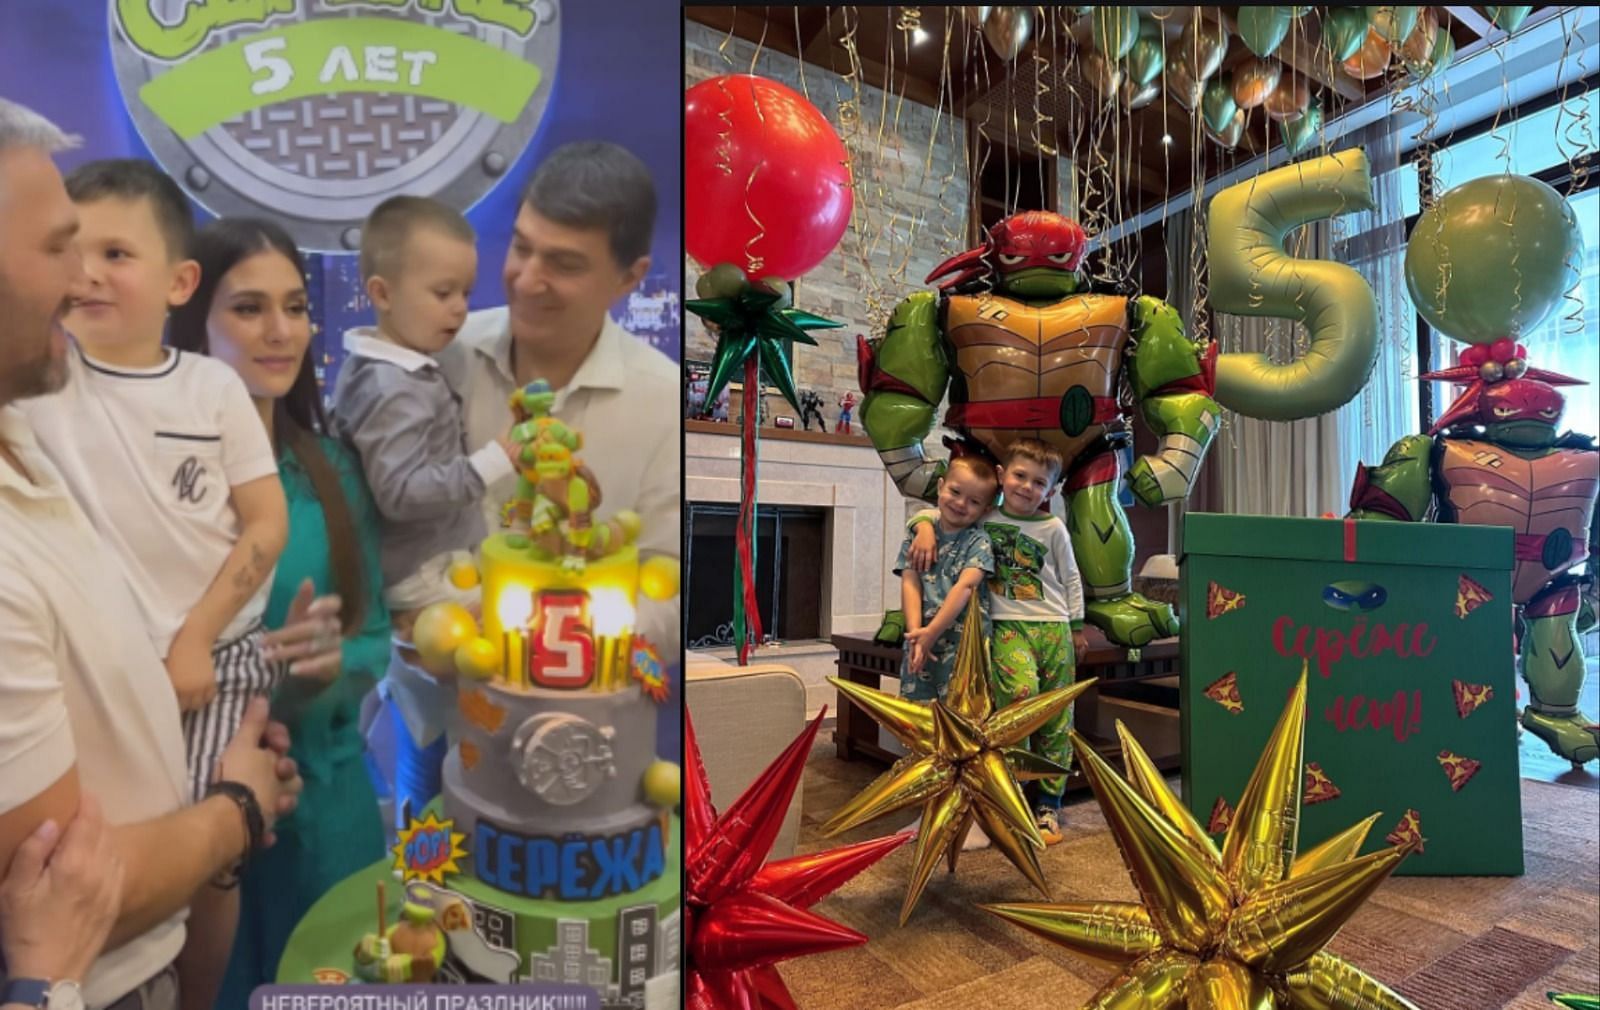 Alex Ovechkin celebrates eldest son Sergei